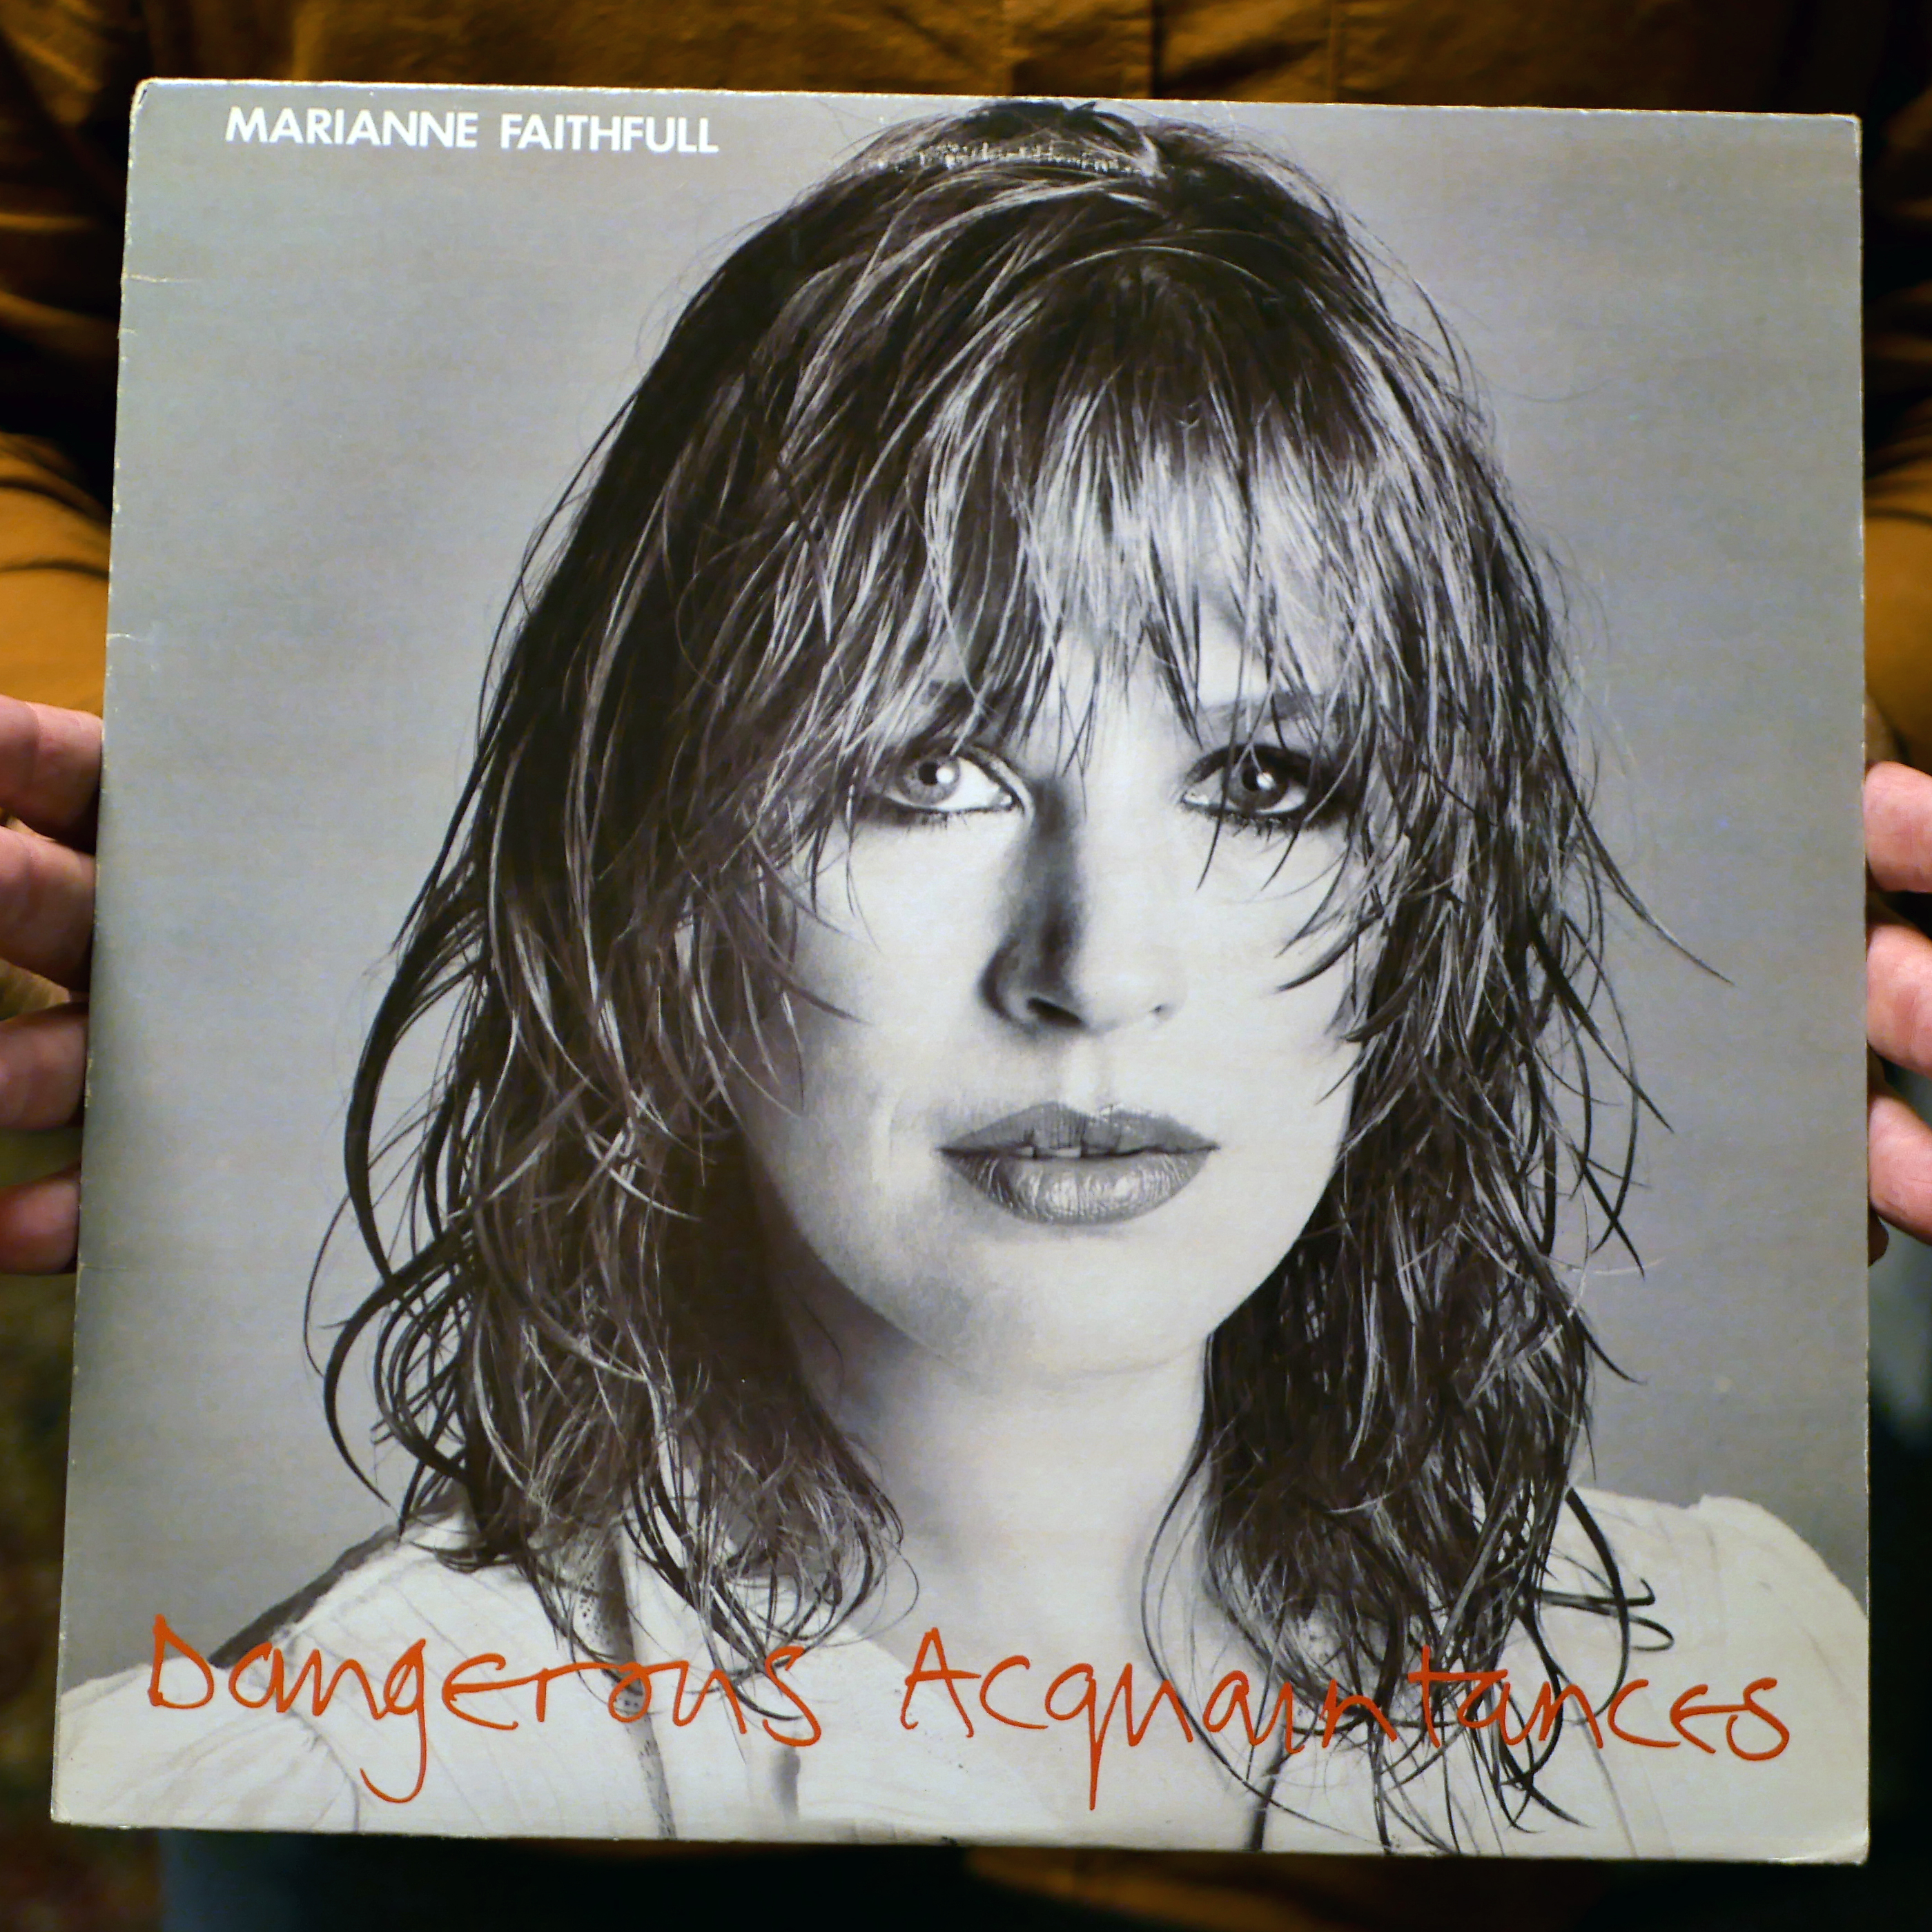 Marianne Faithfull – Dangerous Acquiantances [LP, 1981]